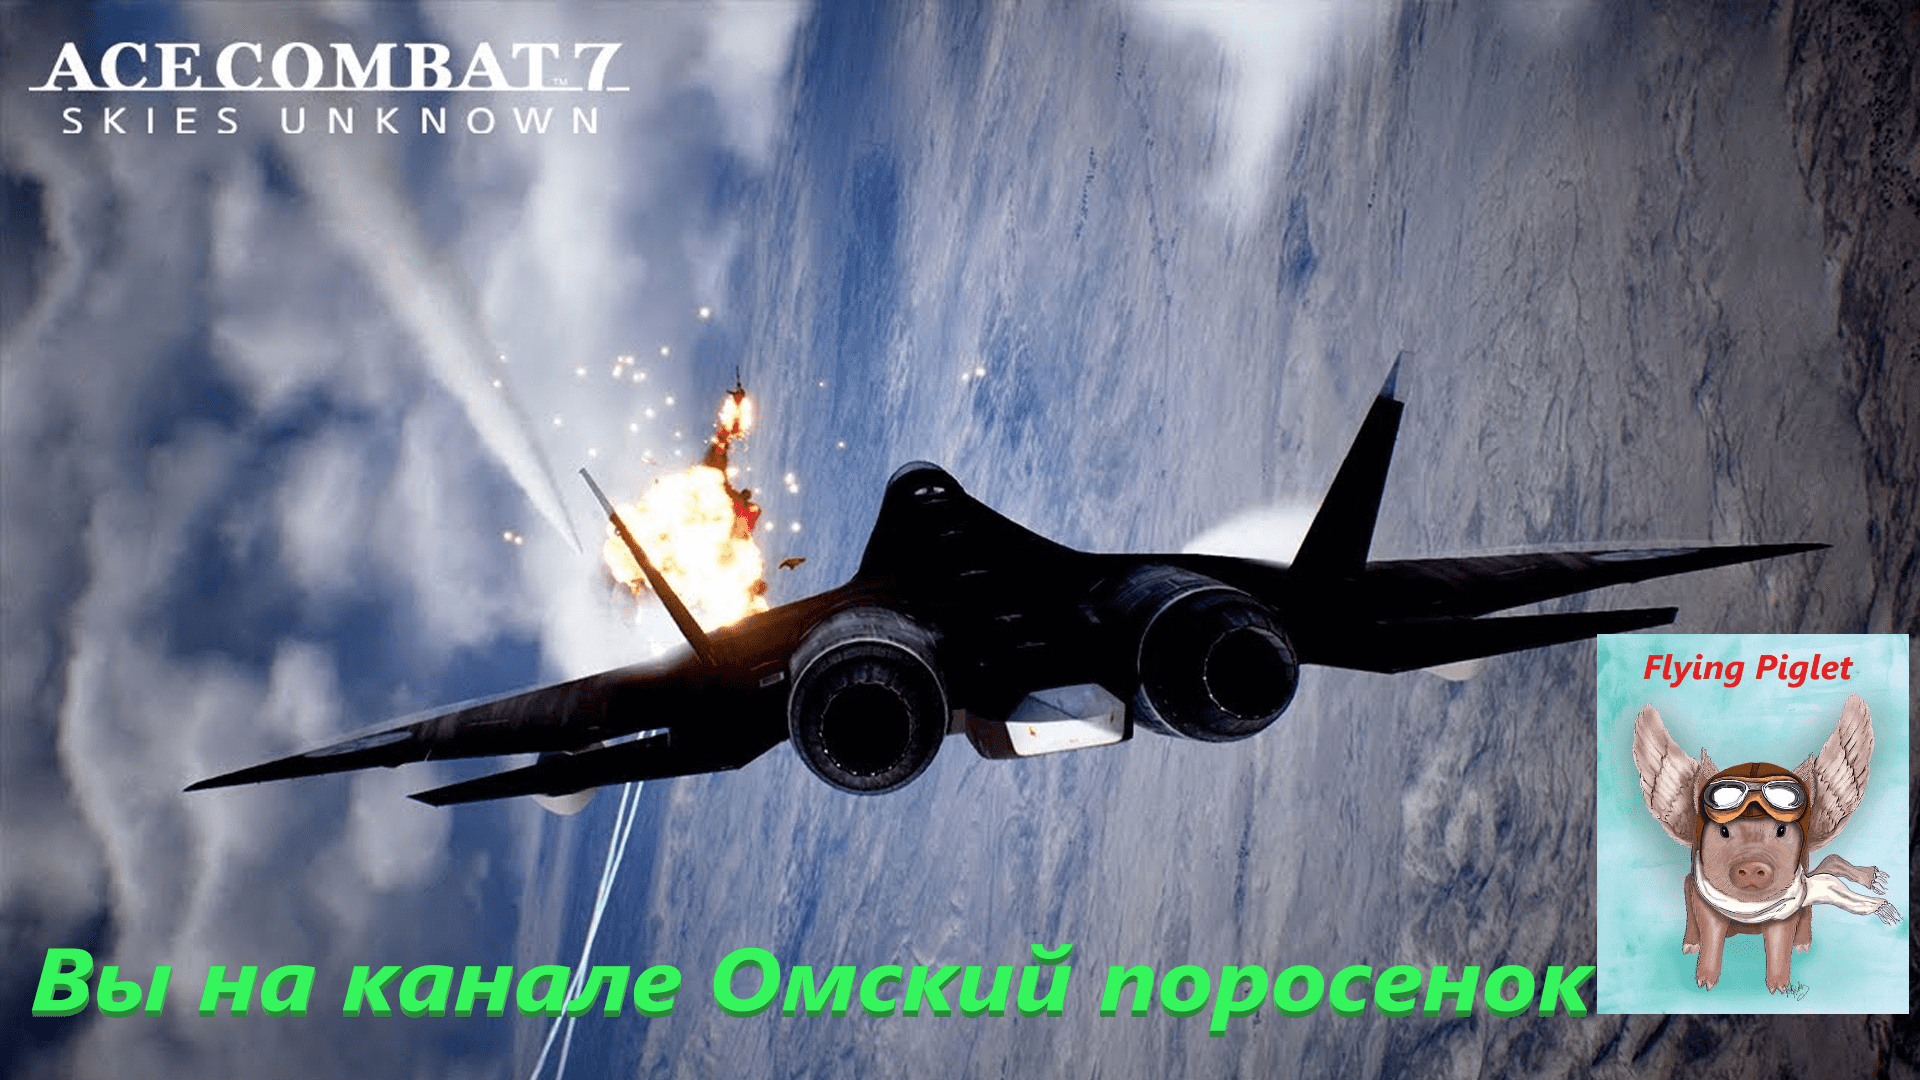 Ace Combat 7: Приказ о переводе.